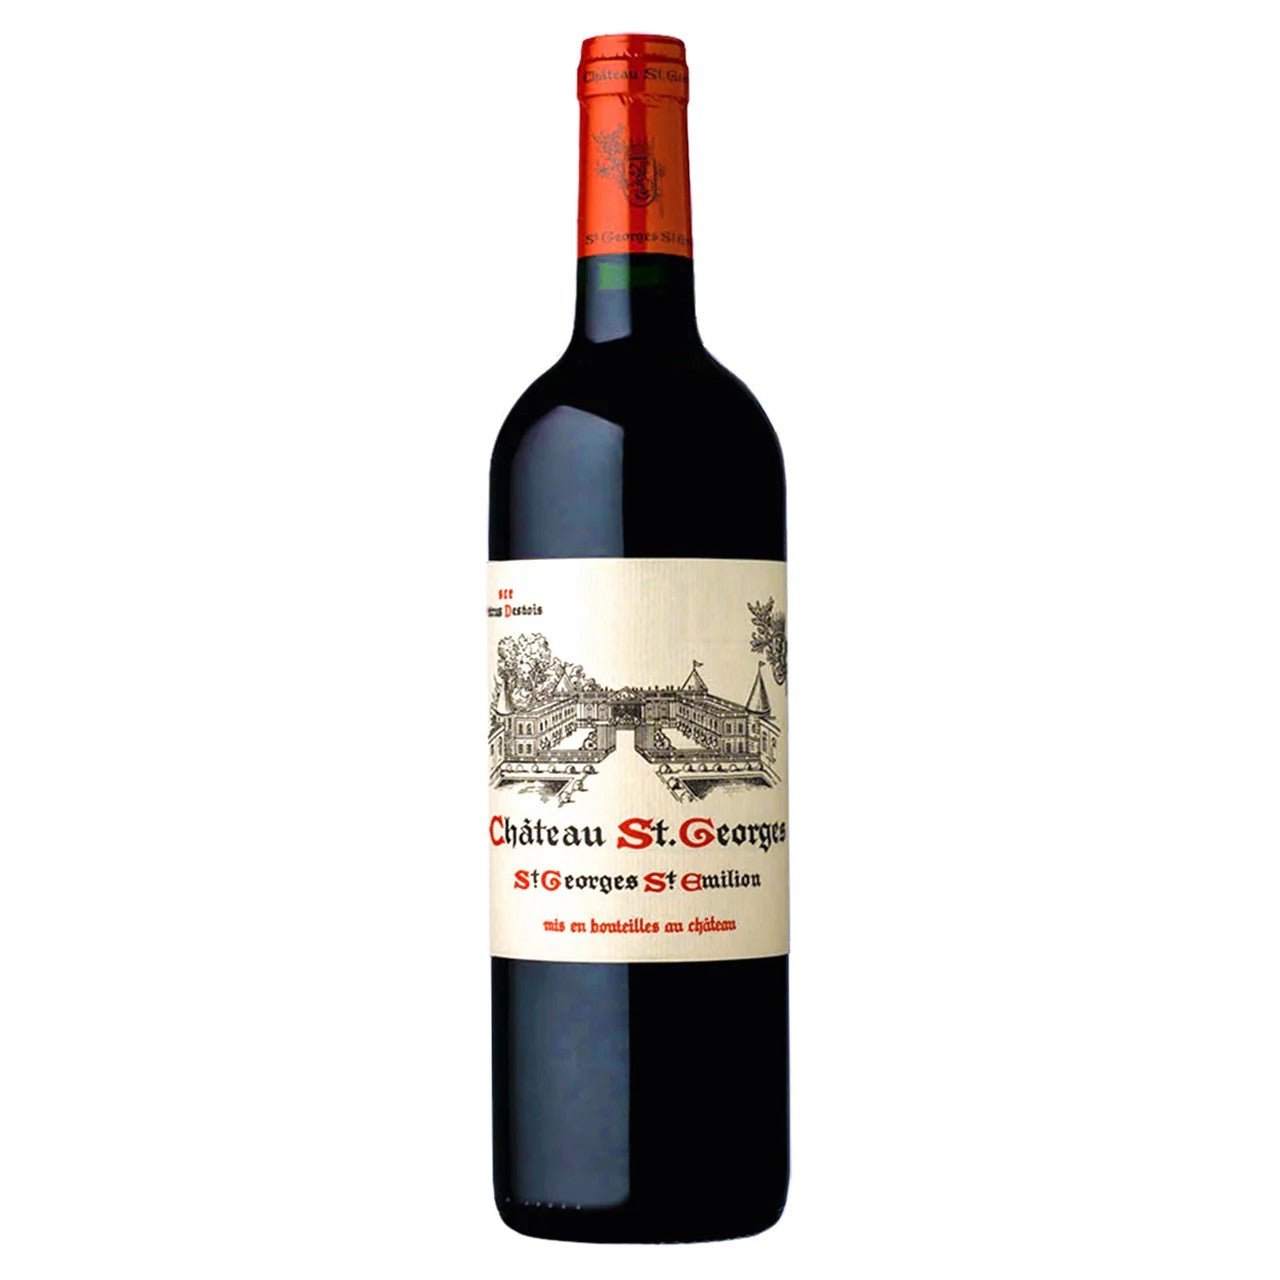 Château St. Georges Saint-Georges-Saint-Émilion 2018 375ml - Wine France Red - Liquor Wine Cave